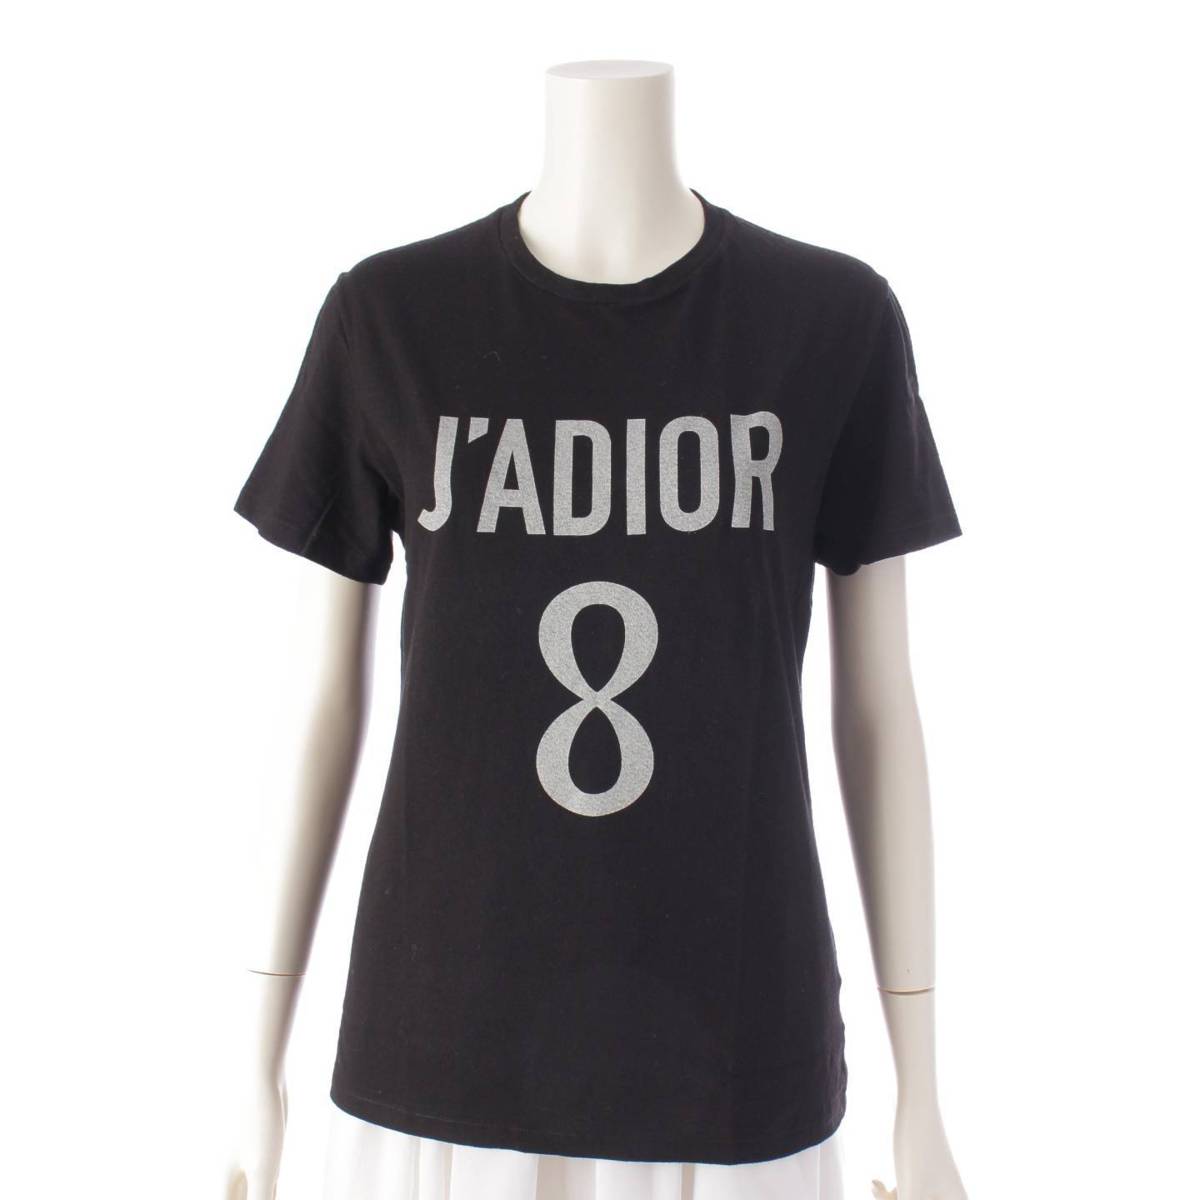 ディオール DIOR JA’DIOR 8 ロゴ 半袖 コットン Tシャツ トップス 843T03TC428 ブラック XS